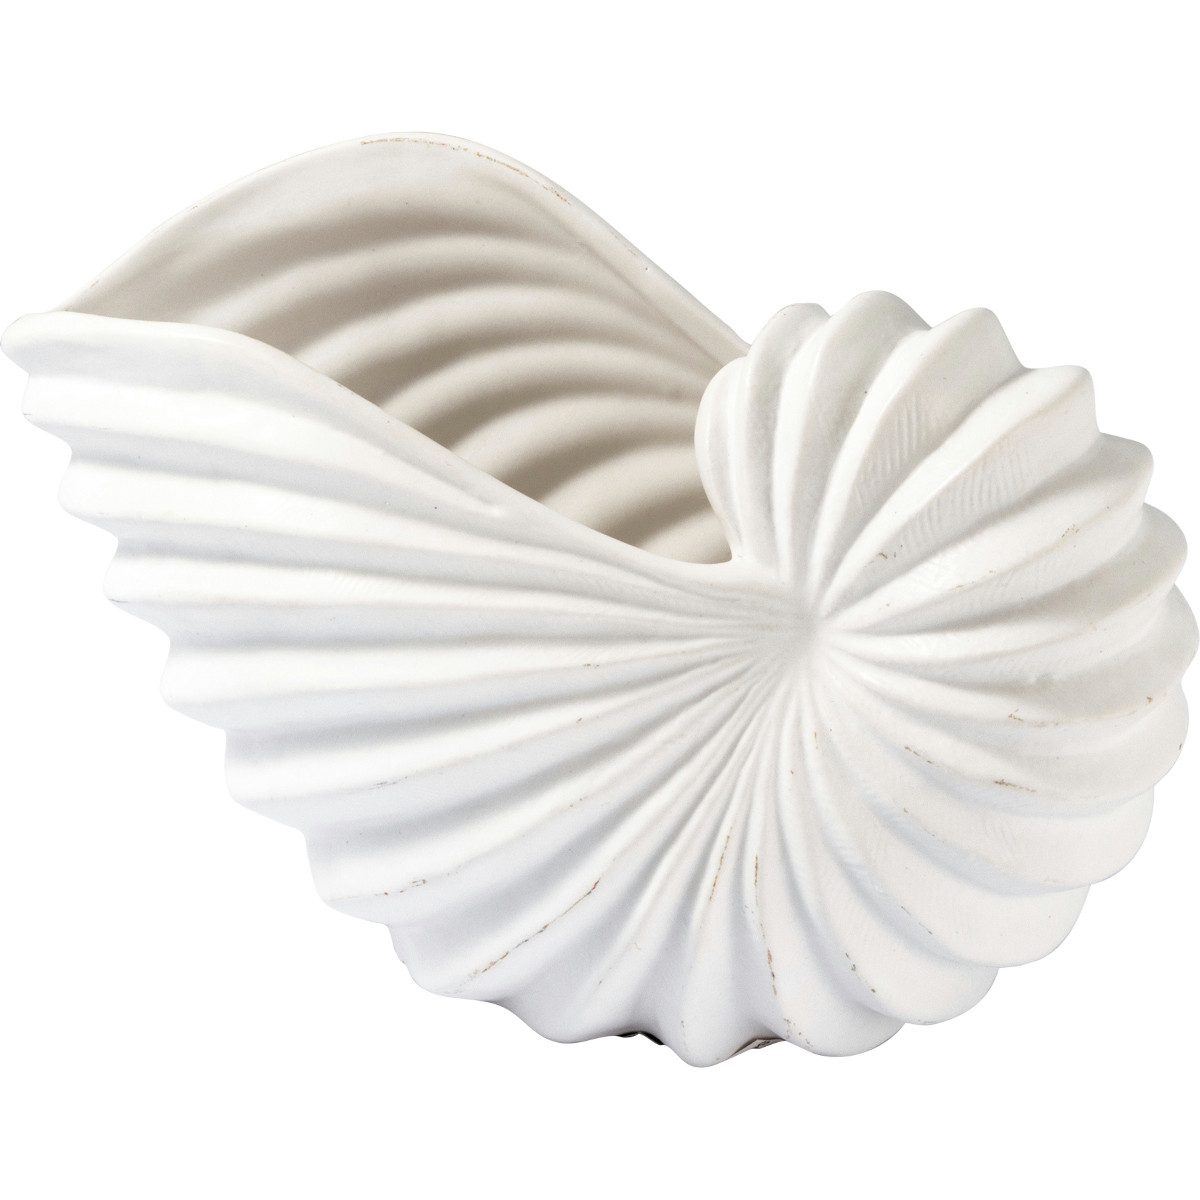 Greengate Dekovase Conch Muschel Vase medium white 22x14cm (Vasen)